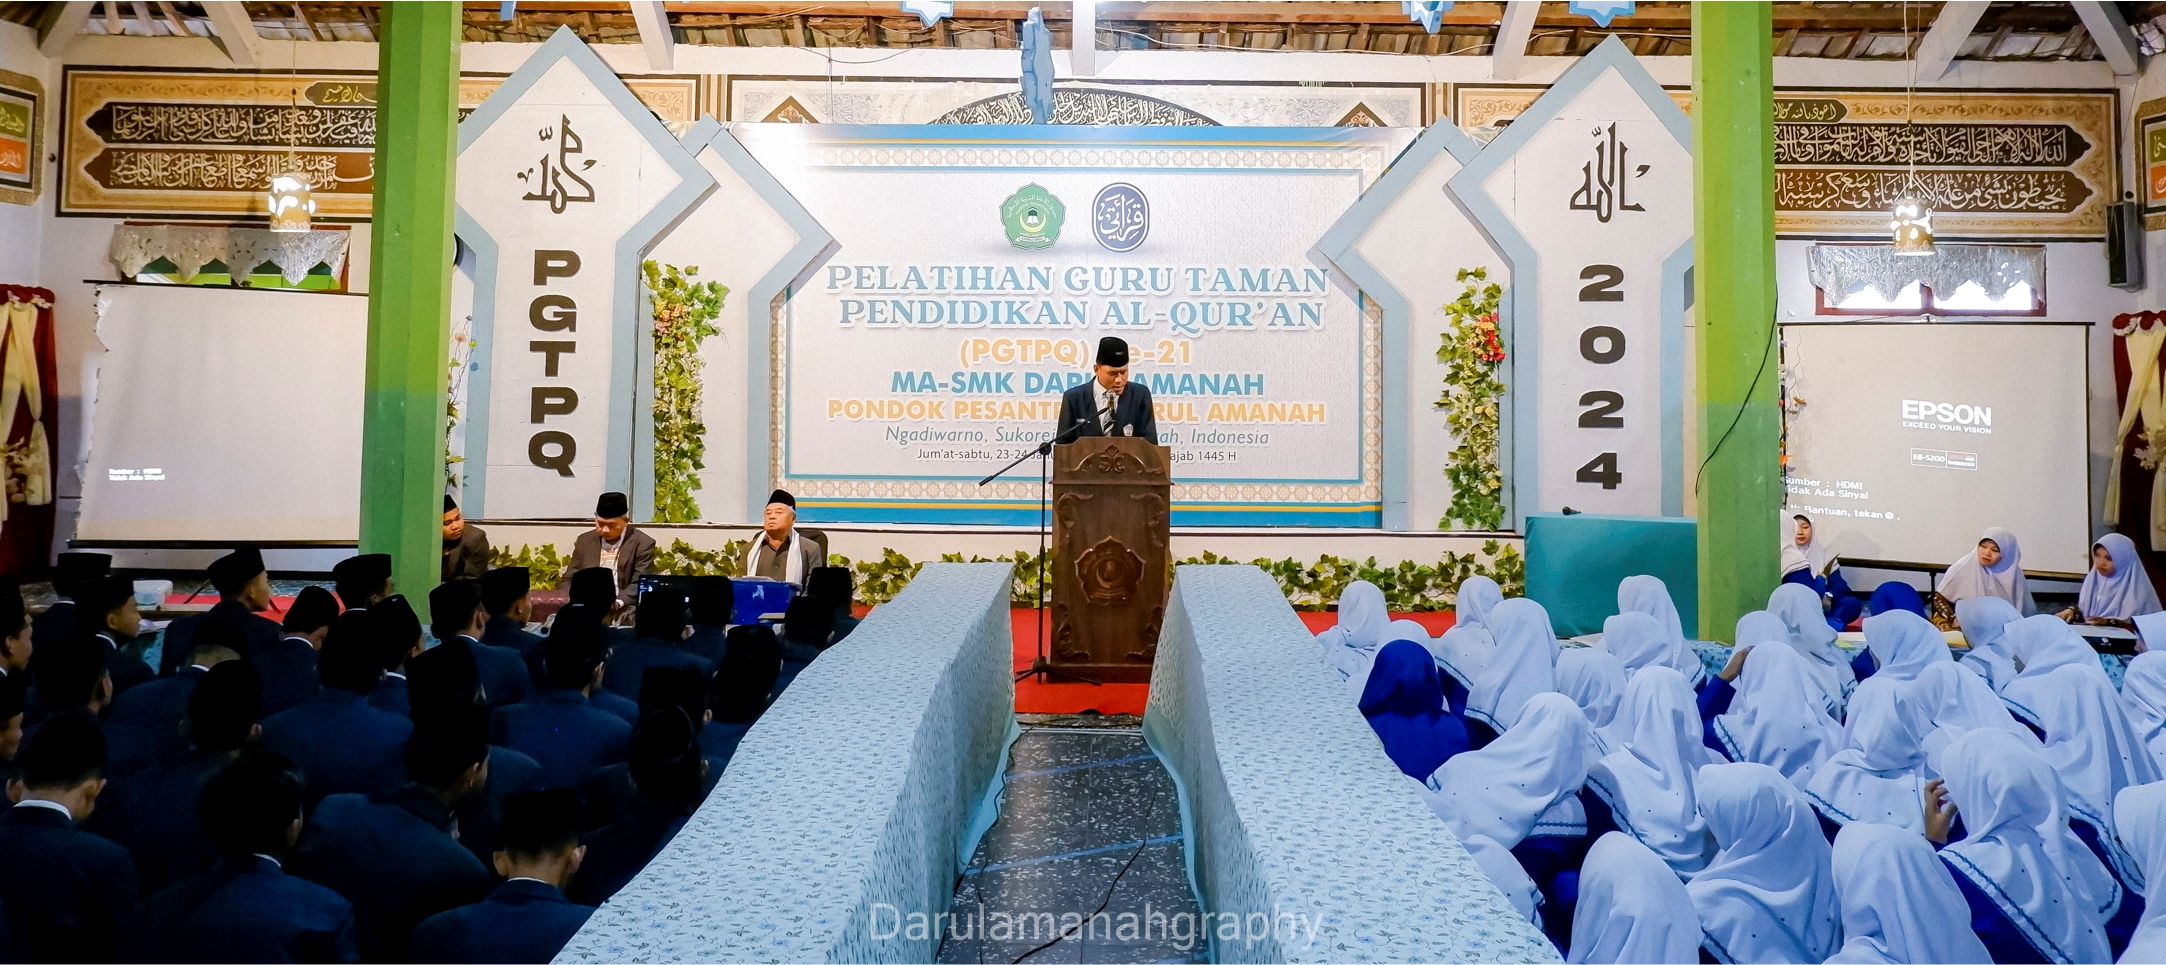 Santri Akhir Pondok Pesantren Darul Amanah Ikuti Pelatihan Pendidikan Guru Taman Pendidikan Al-Qur’an (PGTPQ) ke-21